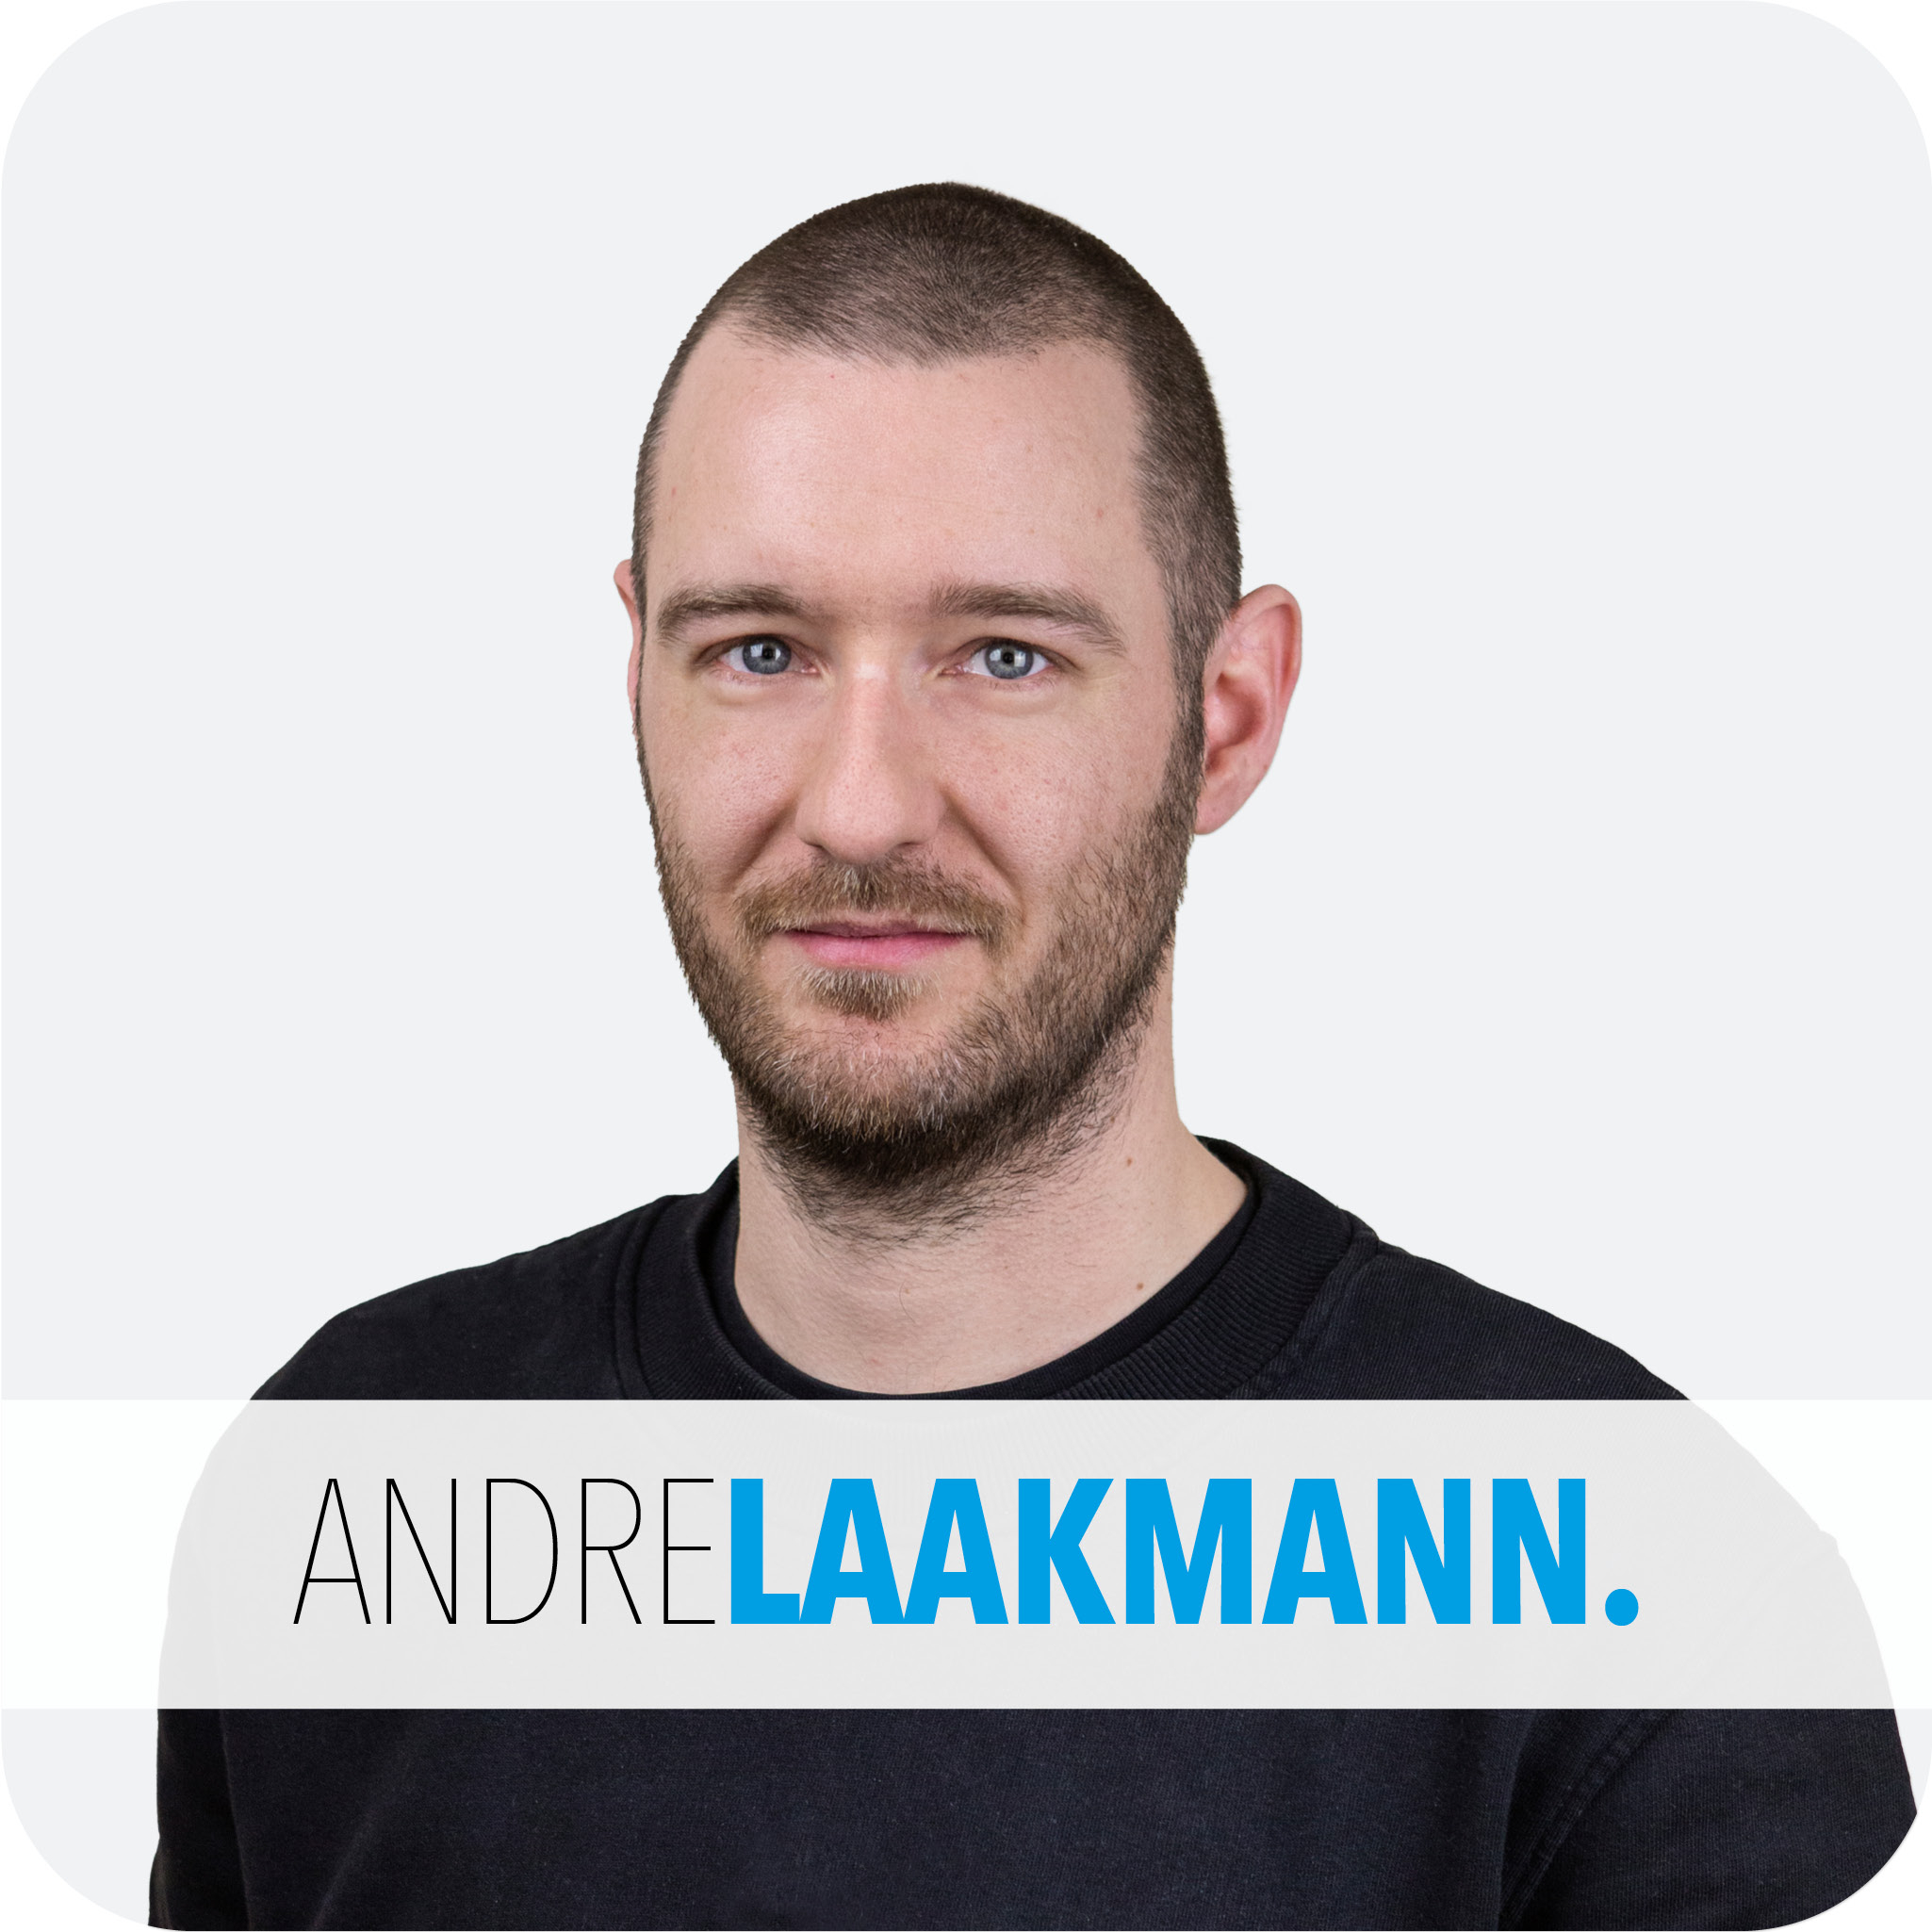 ANDRE LAAKMANN.